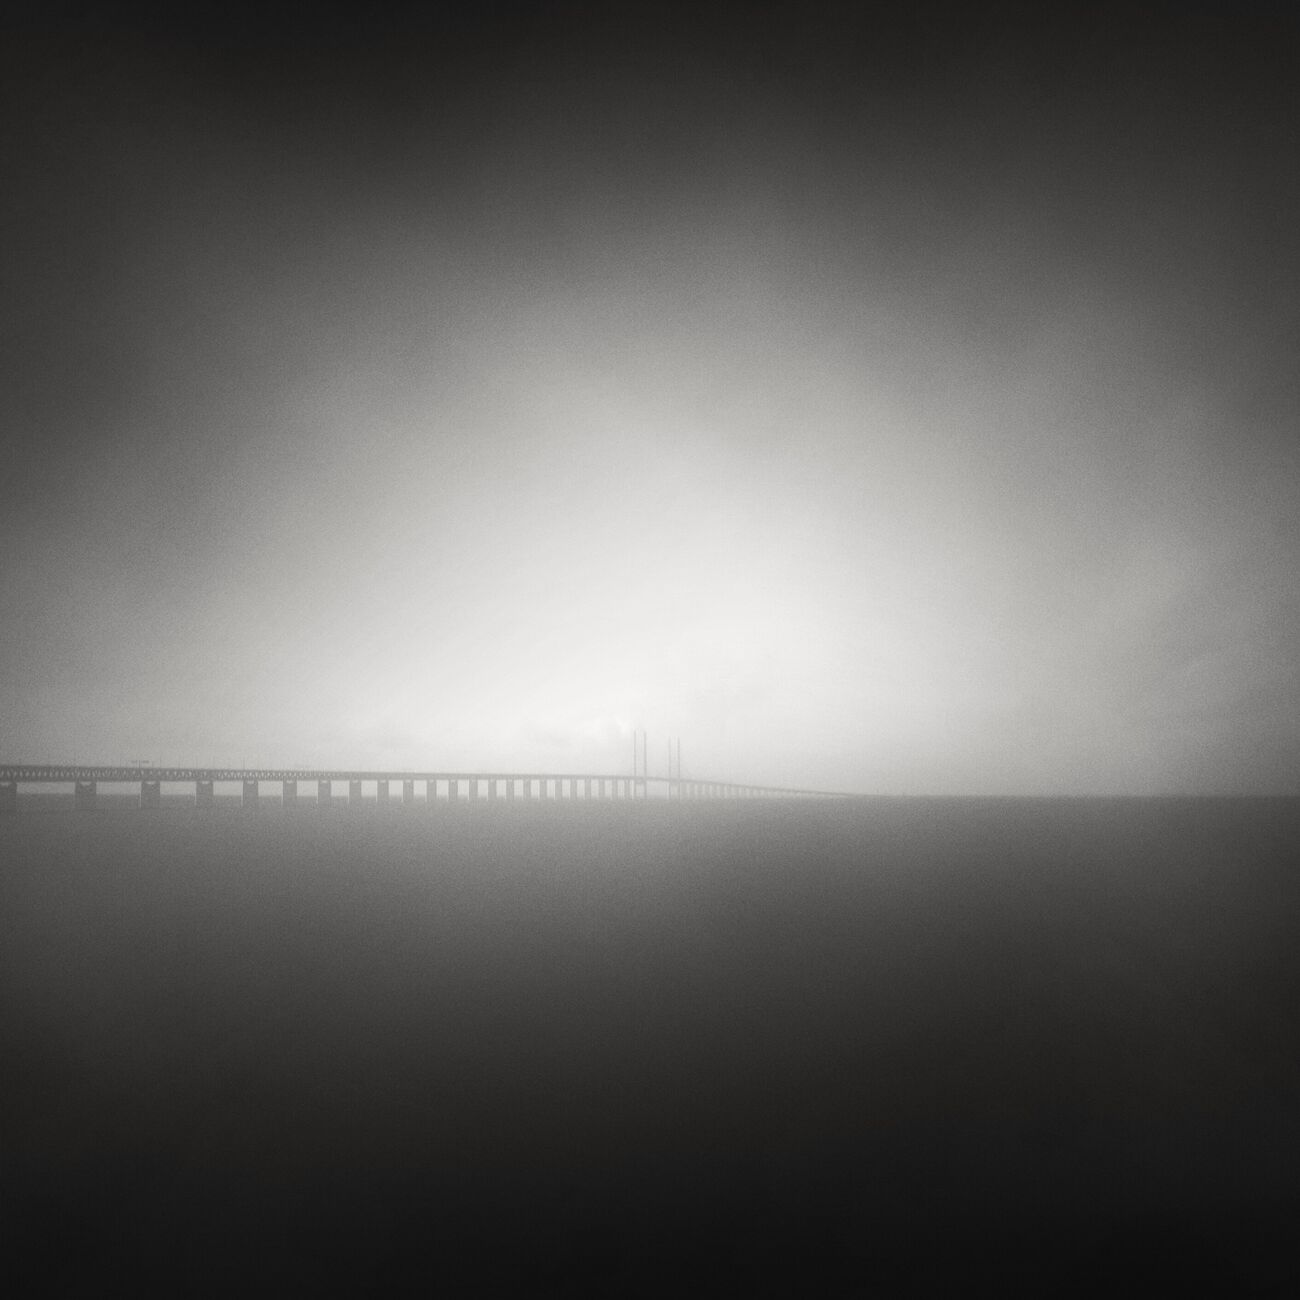 Photography 9.1 x 9.1 in, Foggy Öresund Bridge. Ref-1246-2 - Denis Olivier Photography